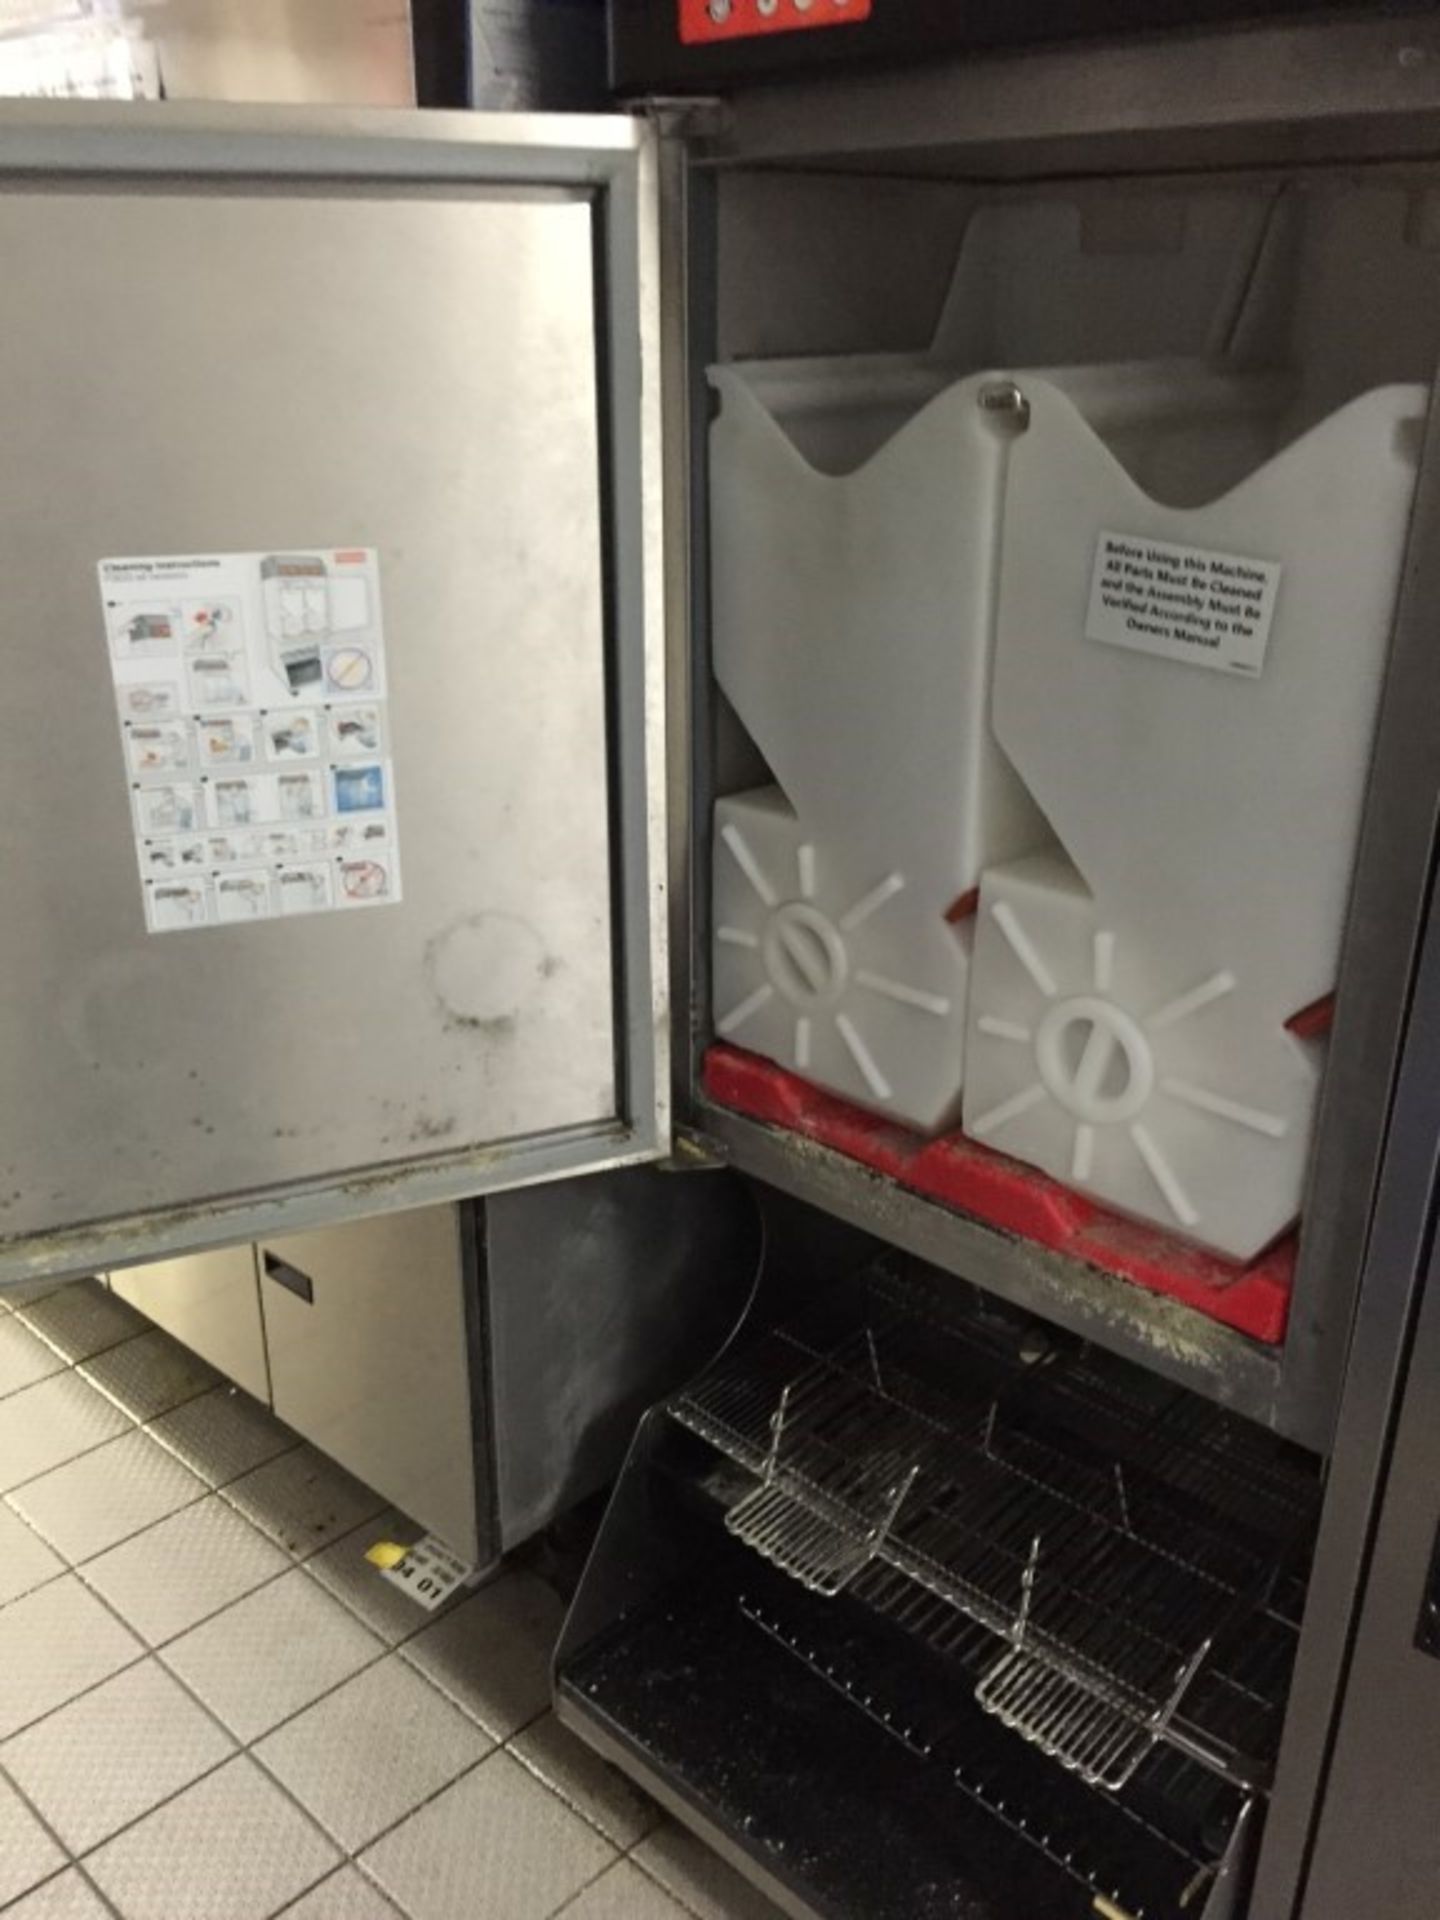 1 x Franke Frozen Food Product Dispenser – Model FD3 - Unique Dispensing system Ensuring Frozen Food - Image 5 of 5